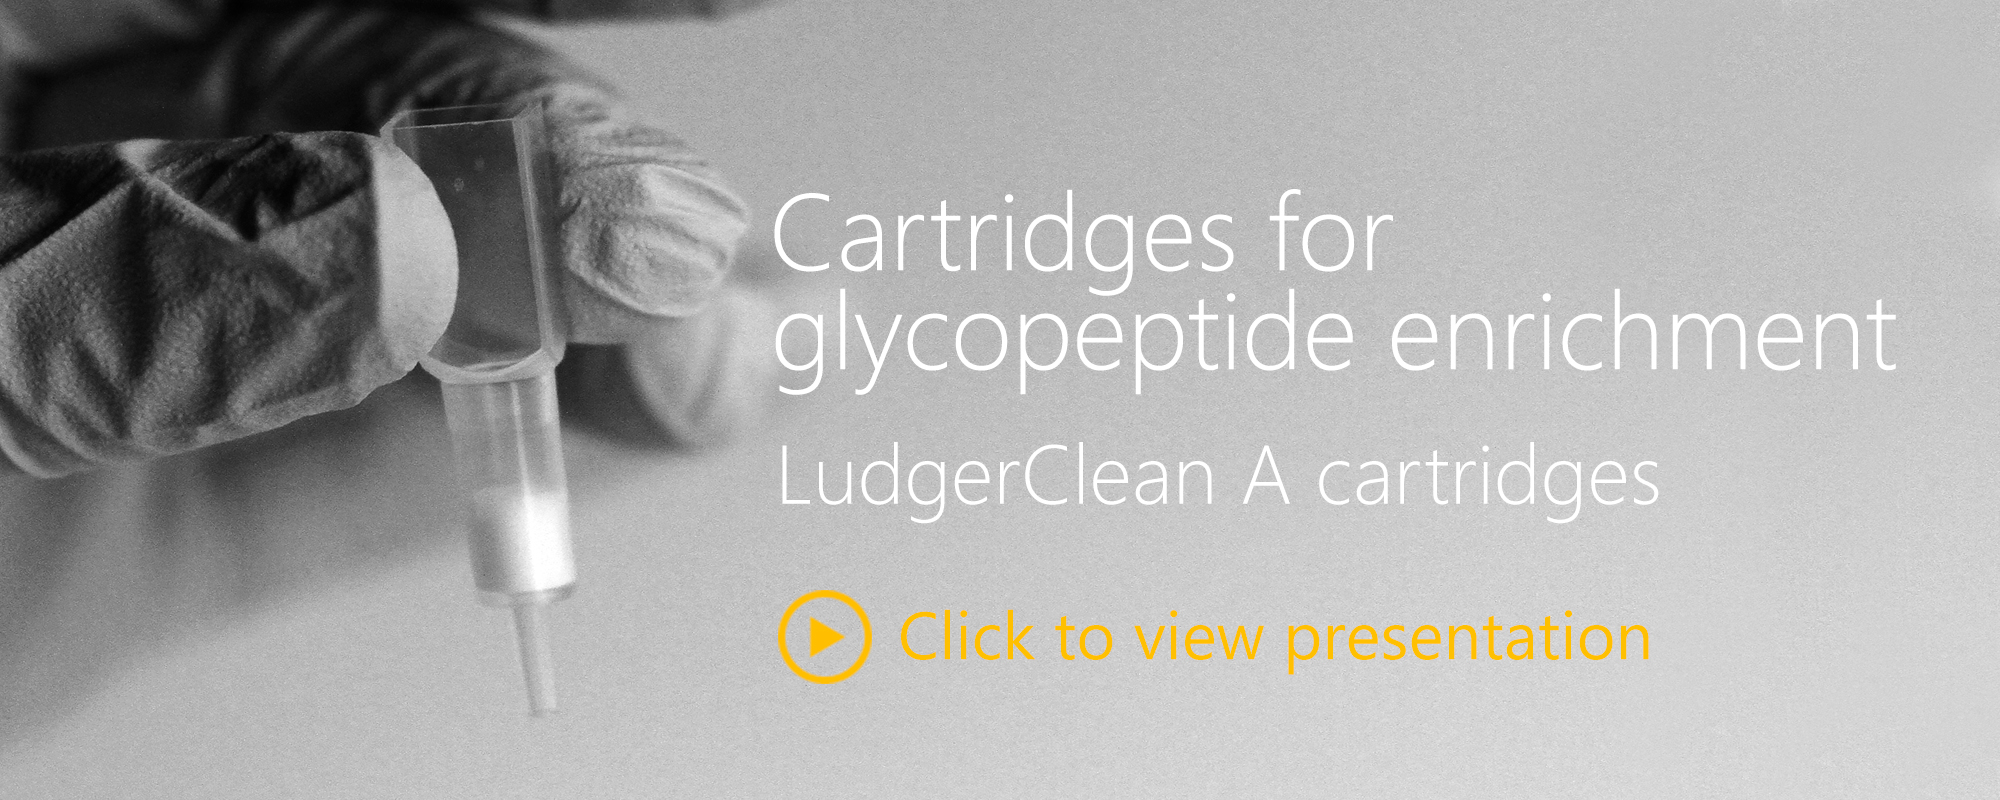 Ludger Glycopeptide Enrichment - A Cartridges